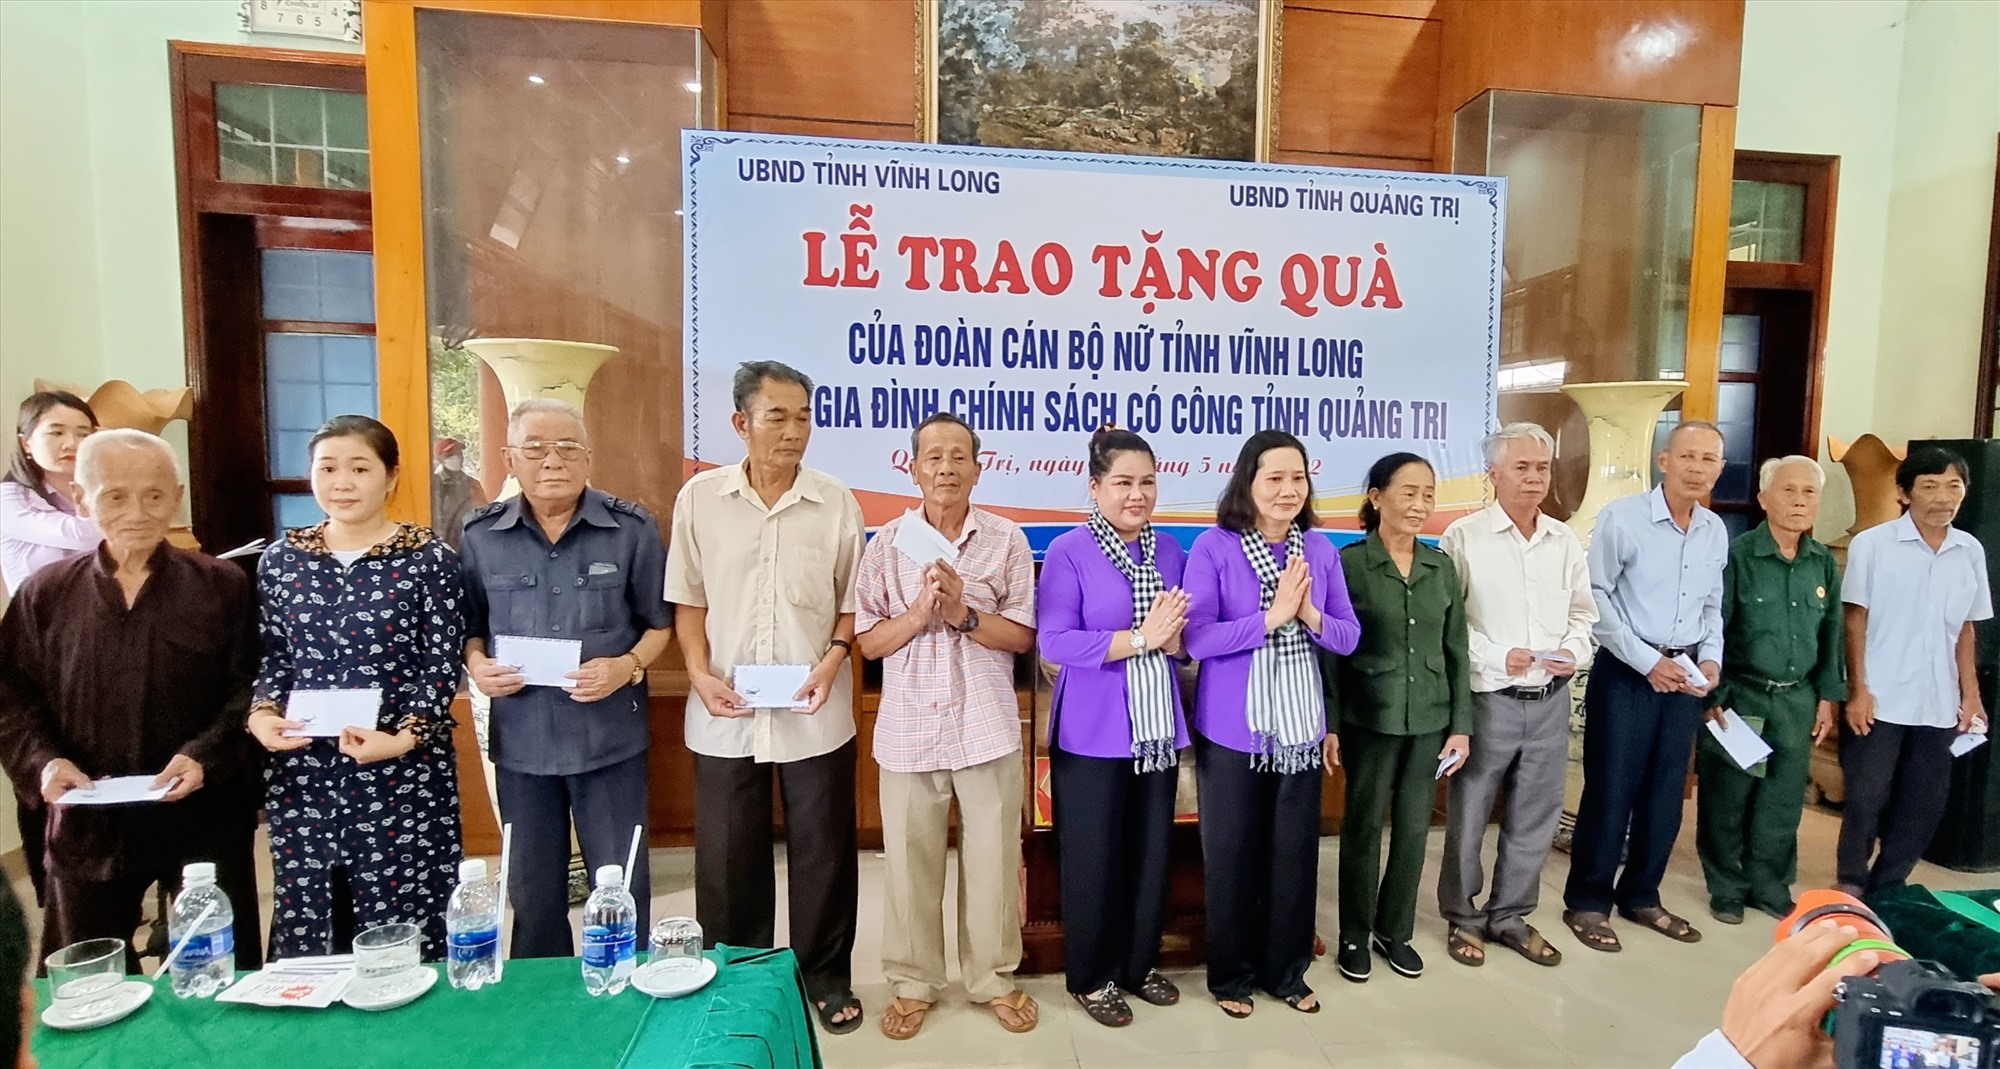 Đoàn công tác Ban chỉ đạo Bình đẳng giới và Vì sự tiến bộ của Phụ nữ tỉnh Vĩnh Long trao tặng quà cho các gia đình chính sách - Ảnh: K.S